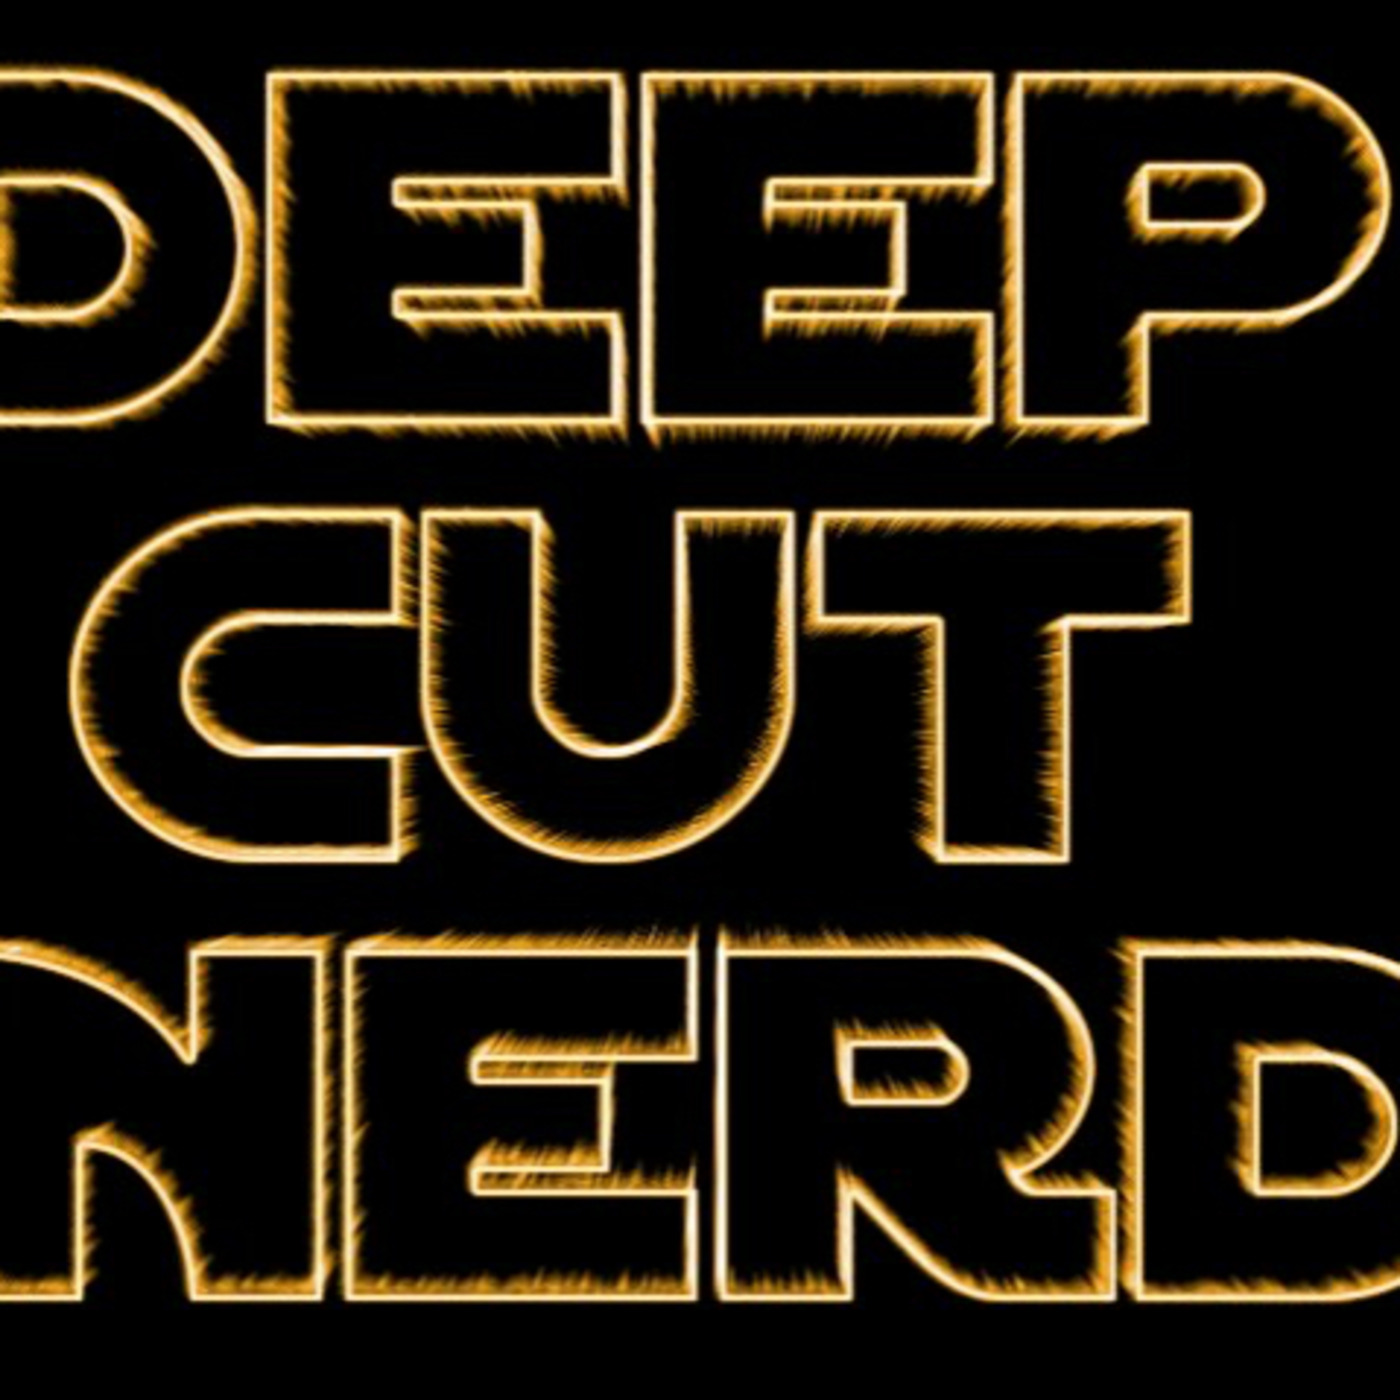 Deep Cut Nerd